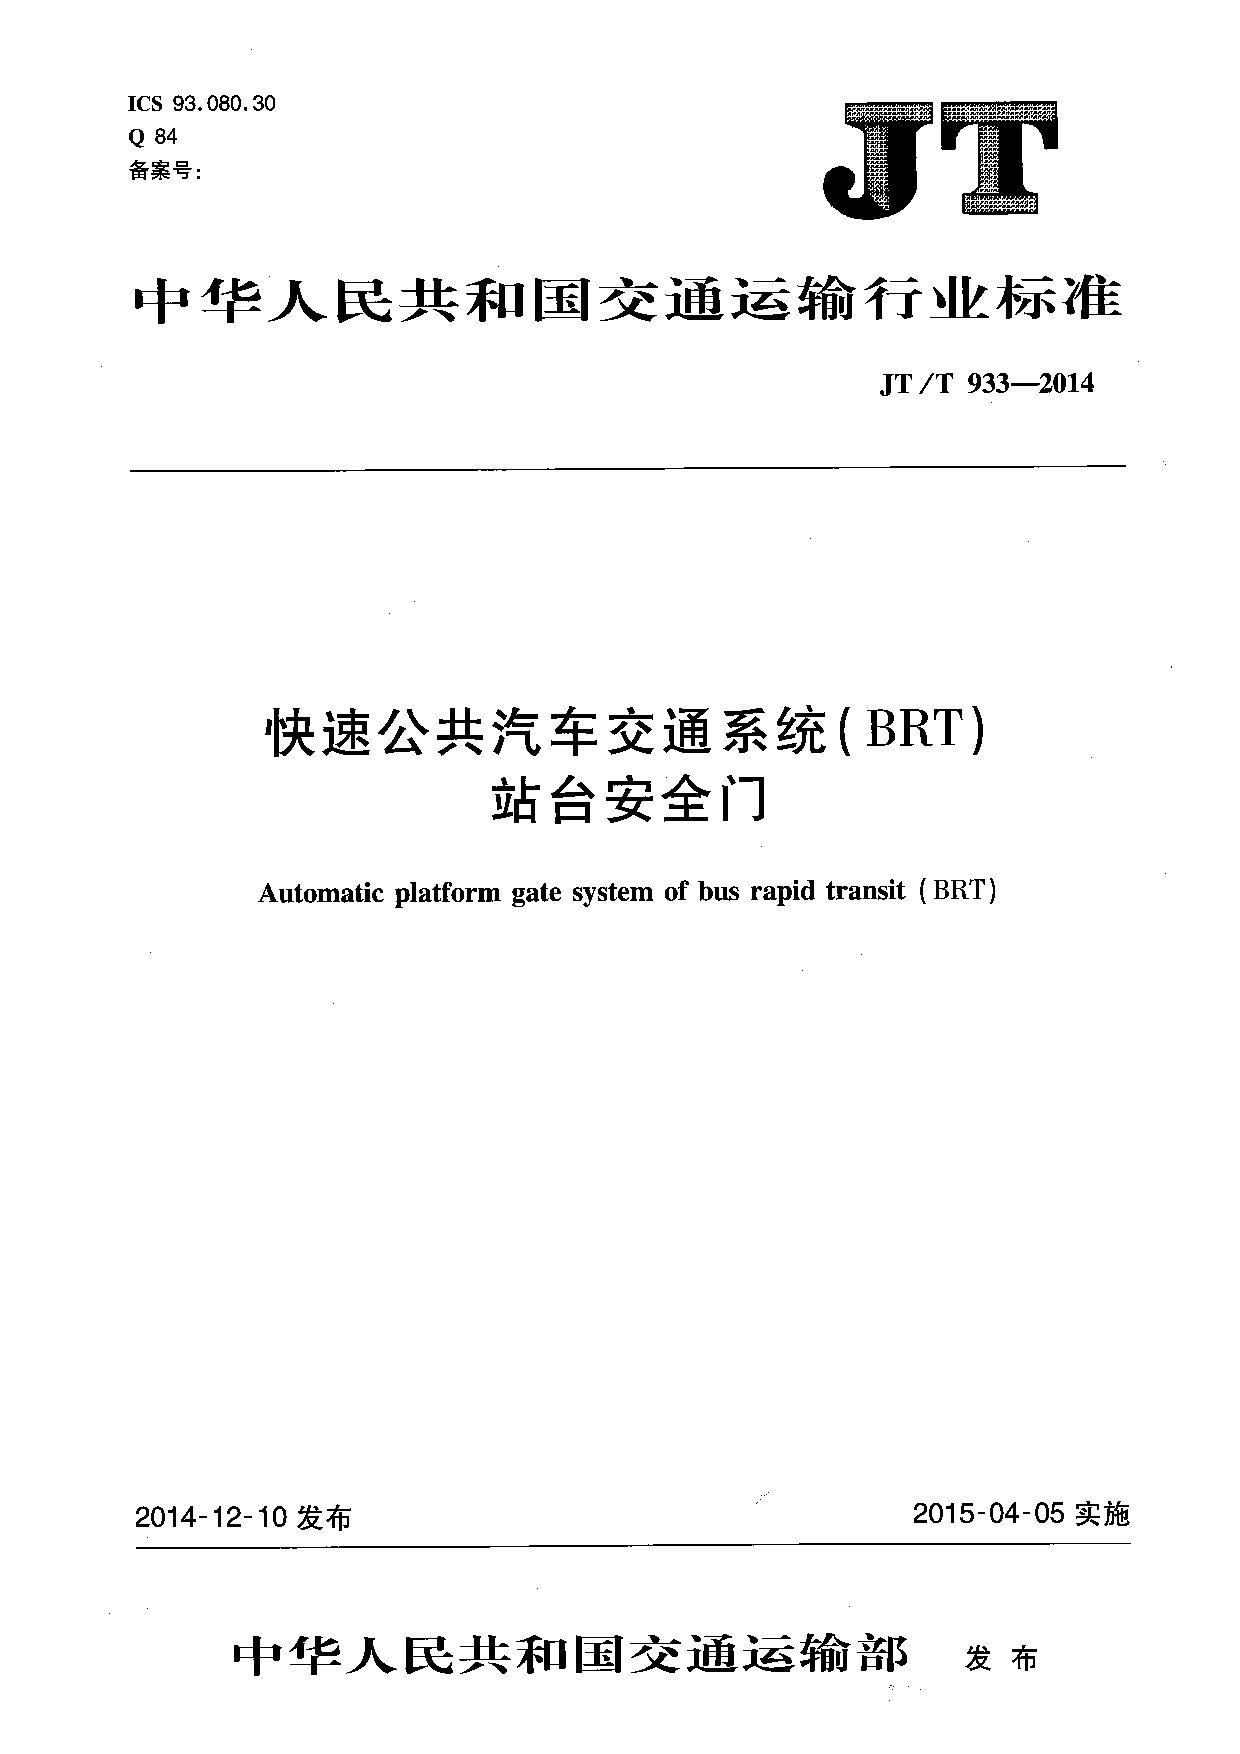 JT/T 933-2014封面图